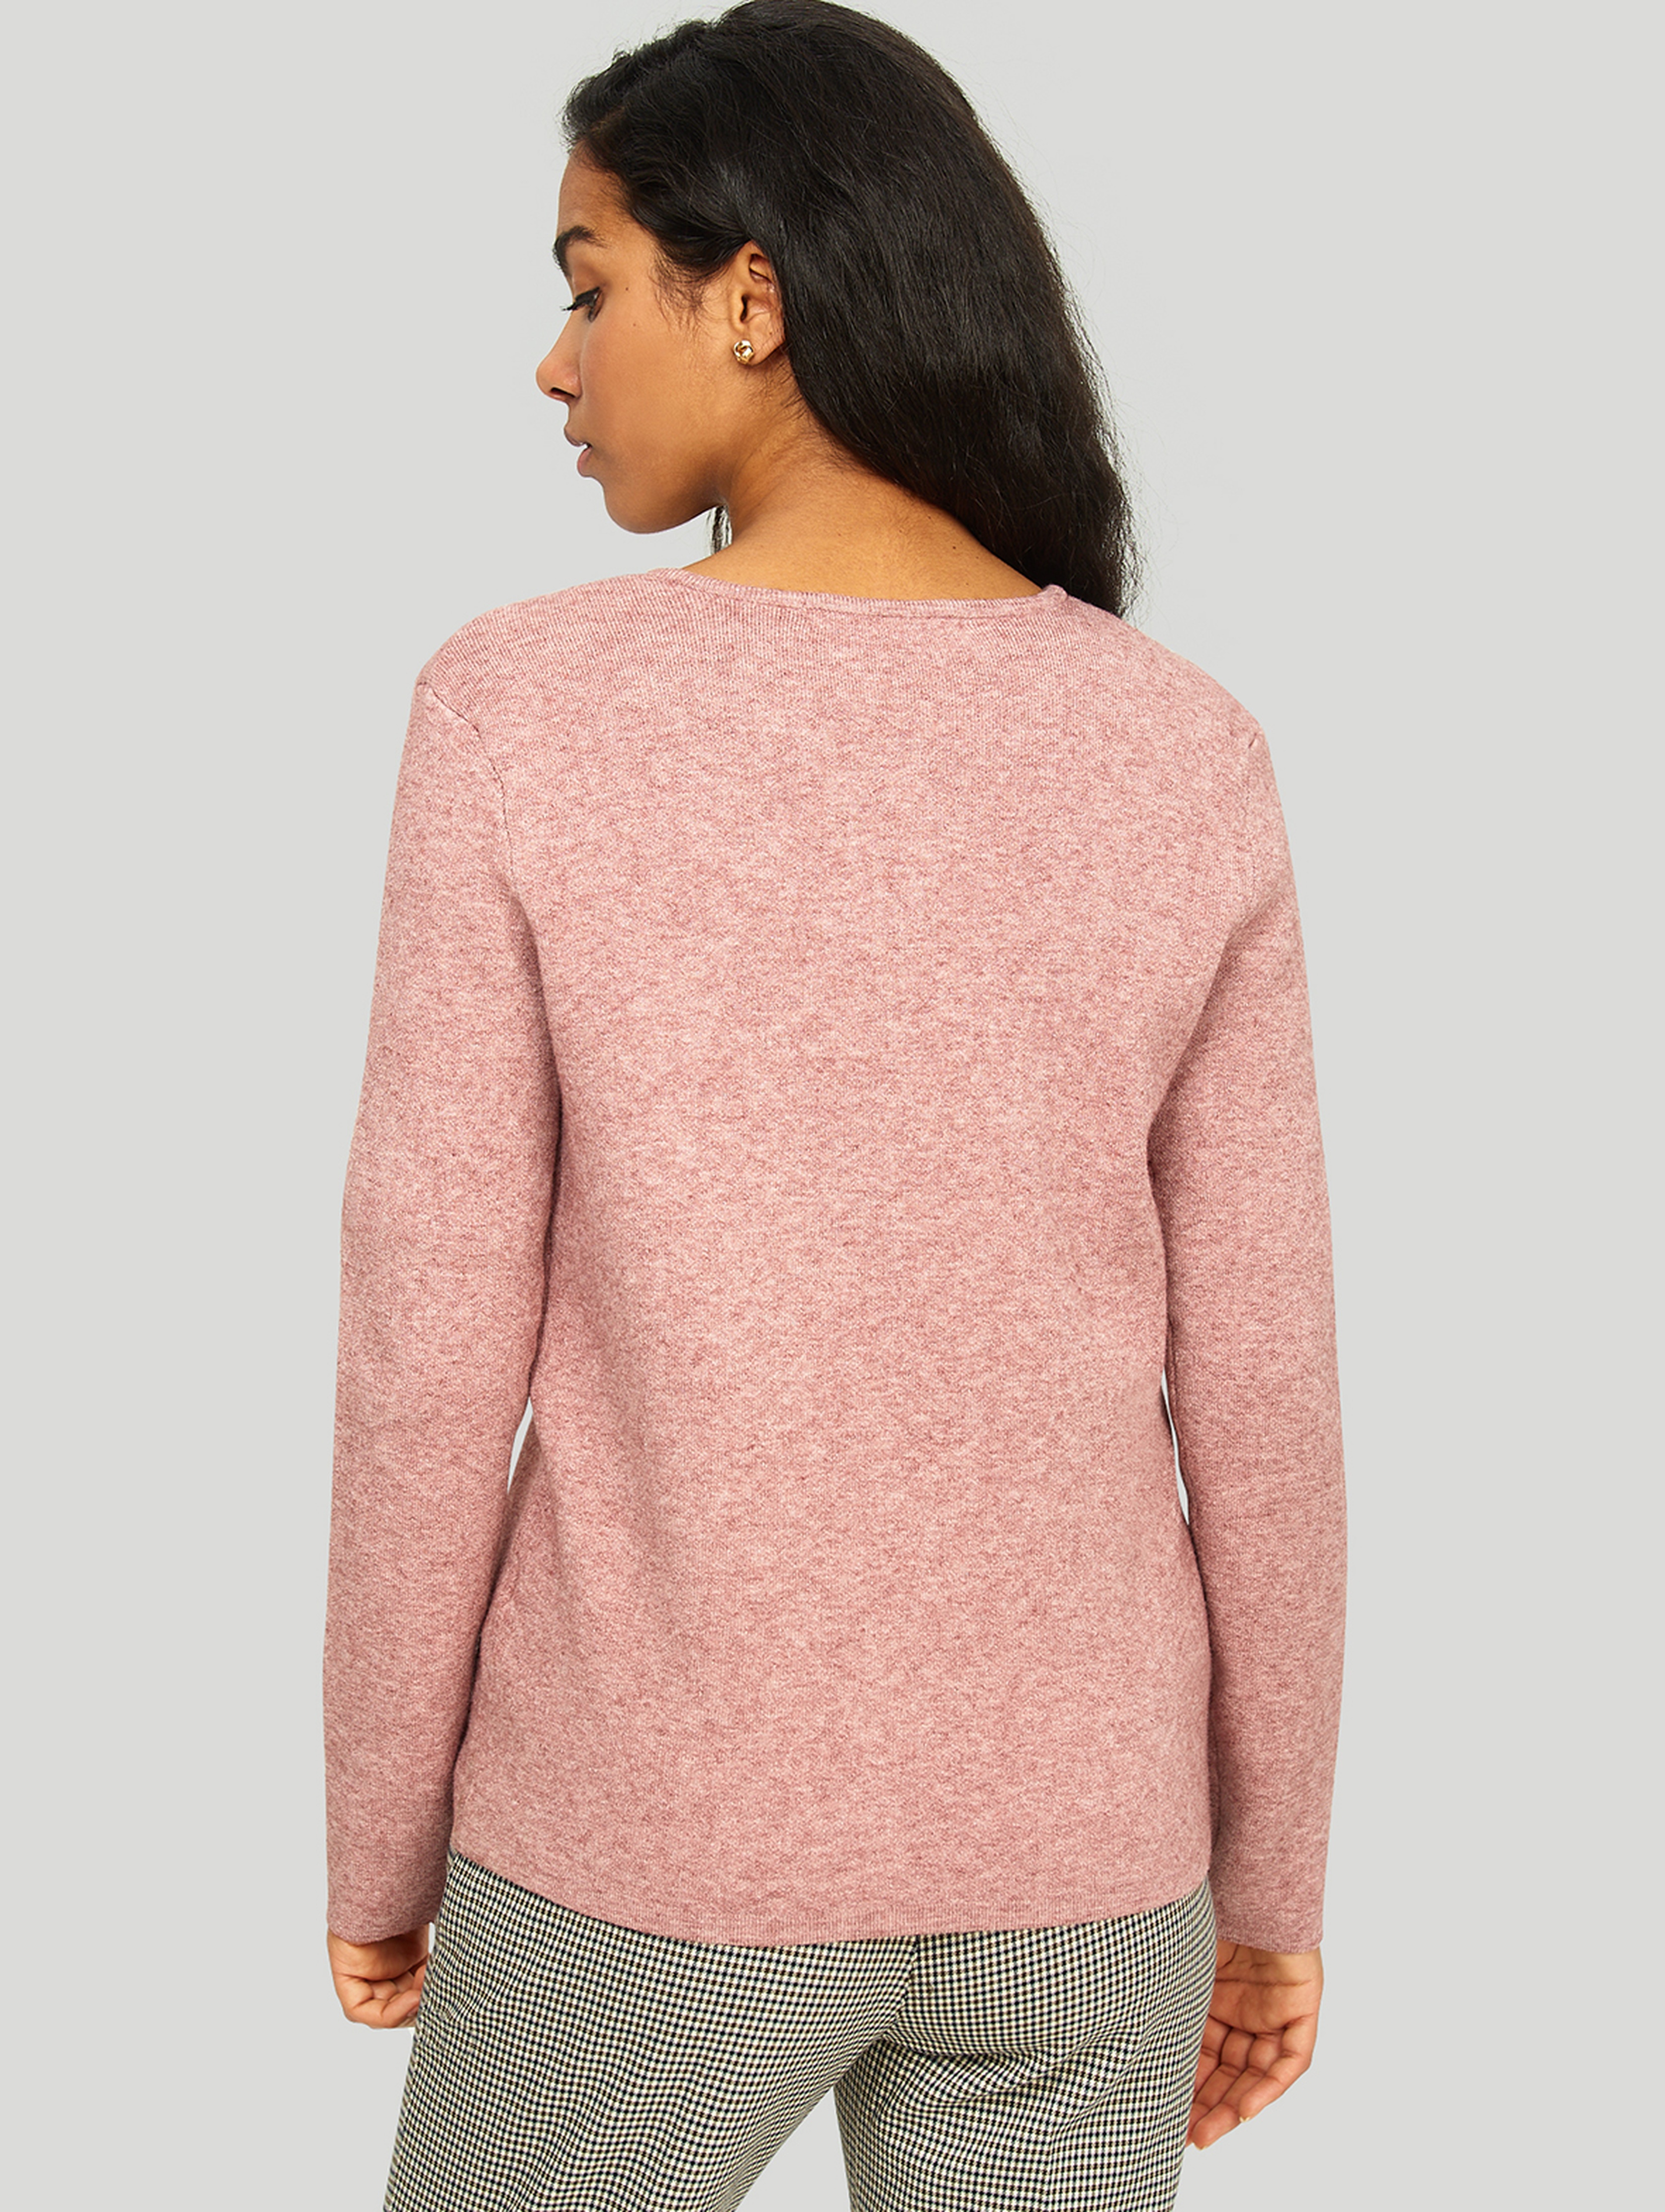 Sweter damski zapinany na guziki - różowy